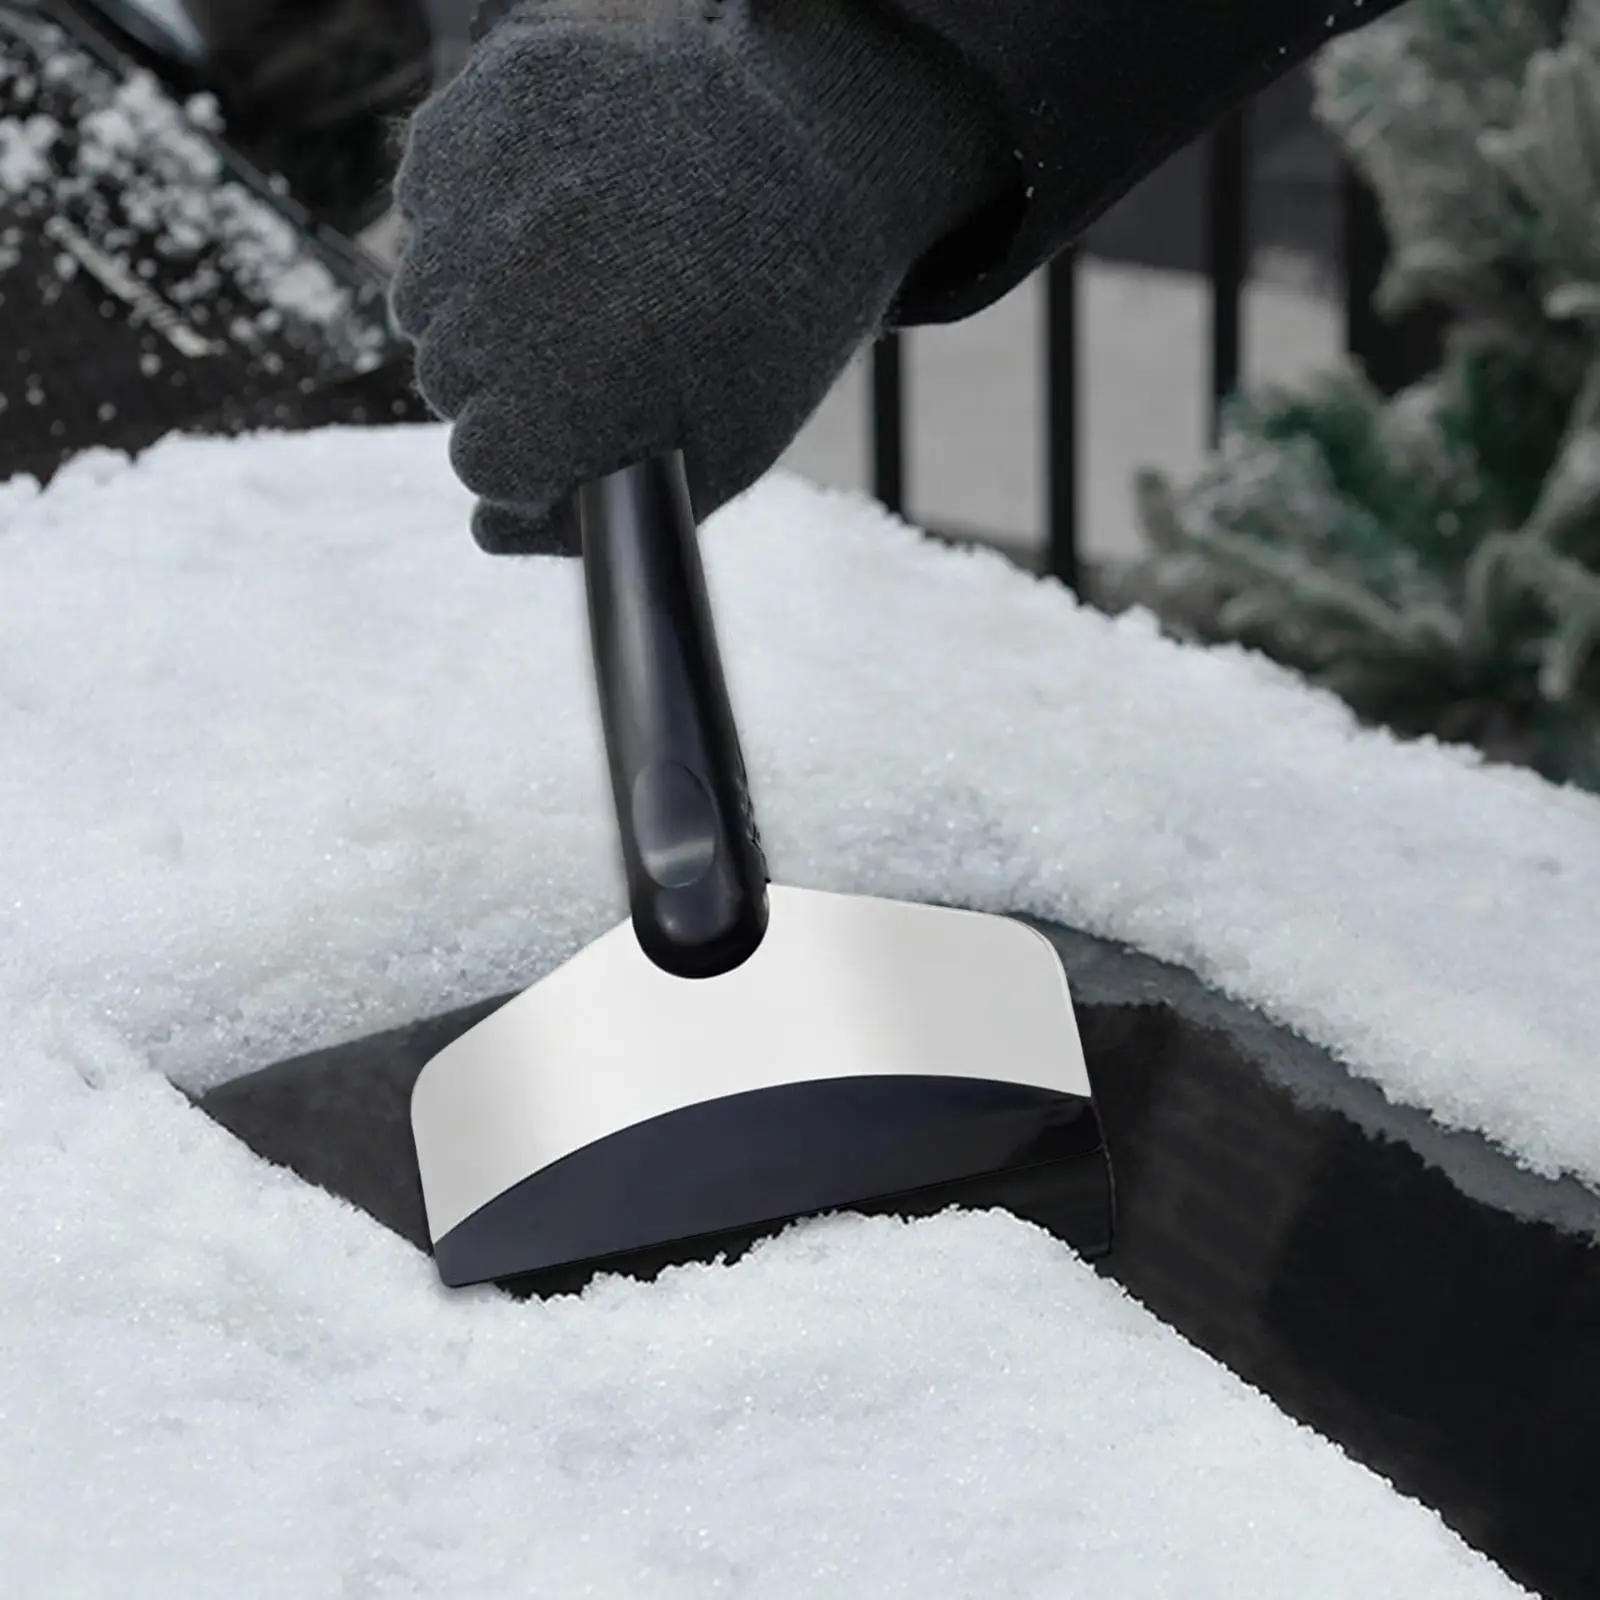 

Snow Shovel Multipurpose Portable Shovel for Camping Car Use Gardening